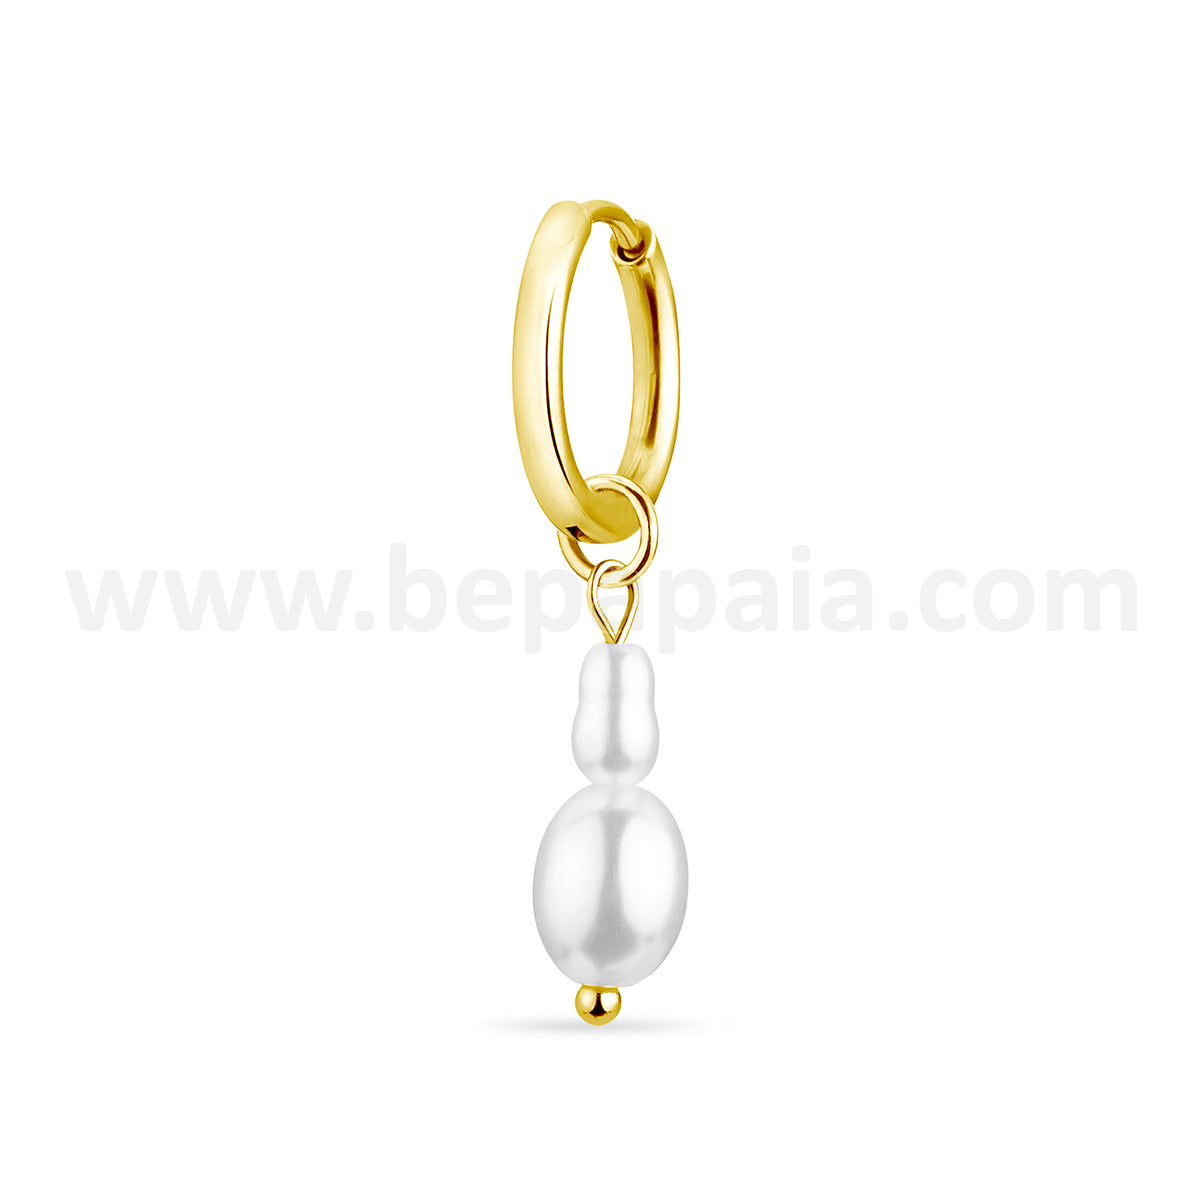 Créole dorée avec des perles de designs assortis